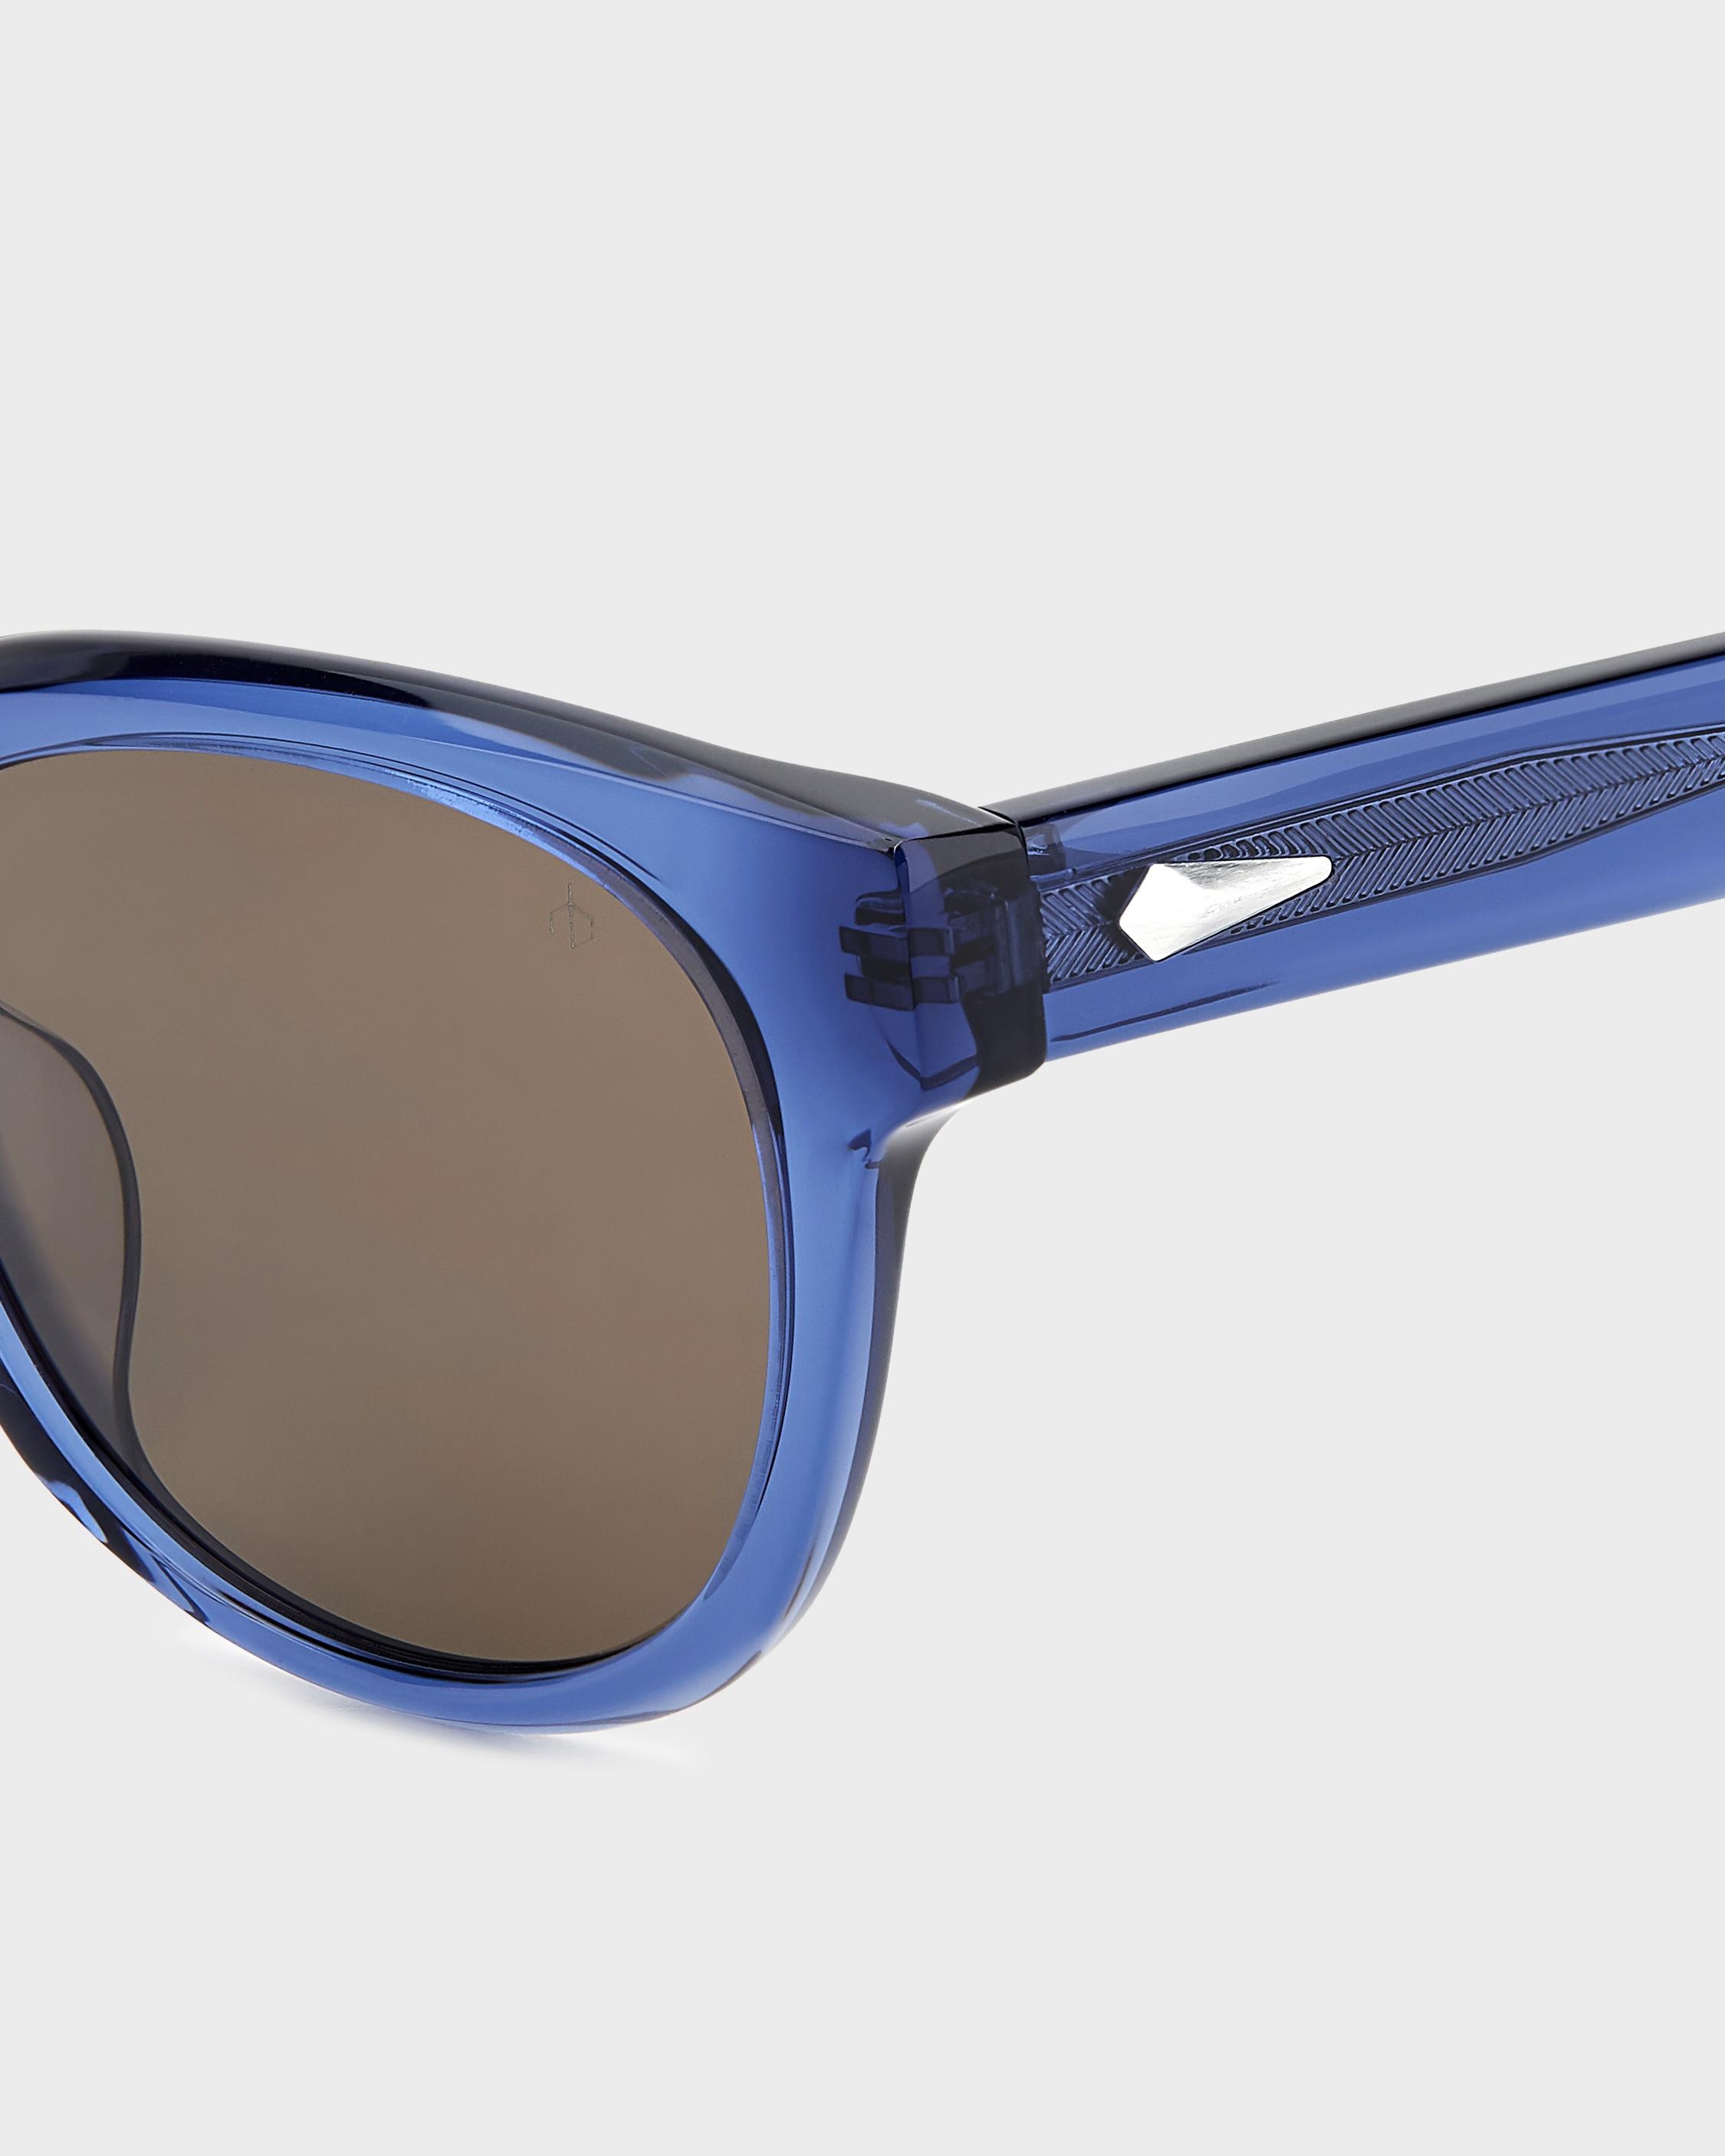 Slayton
Oval Sunglasses - 3